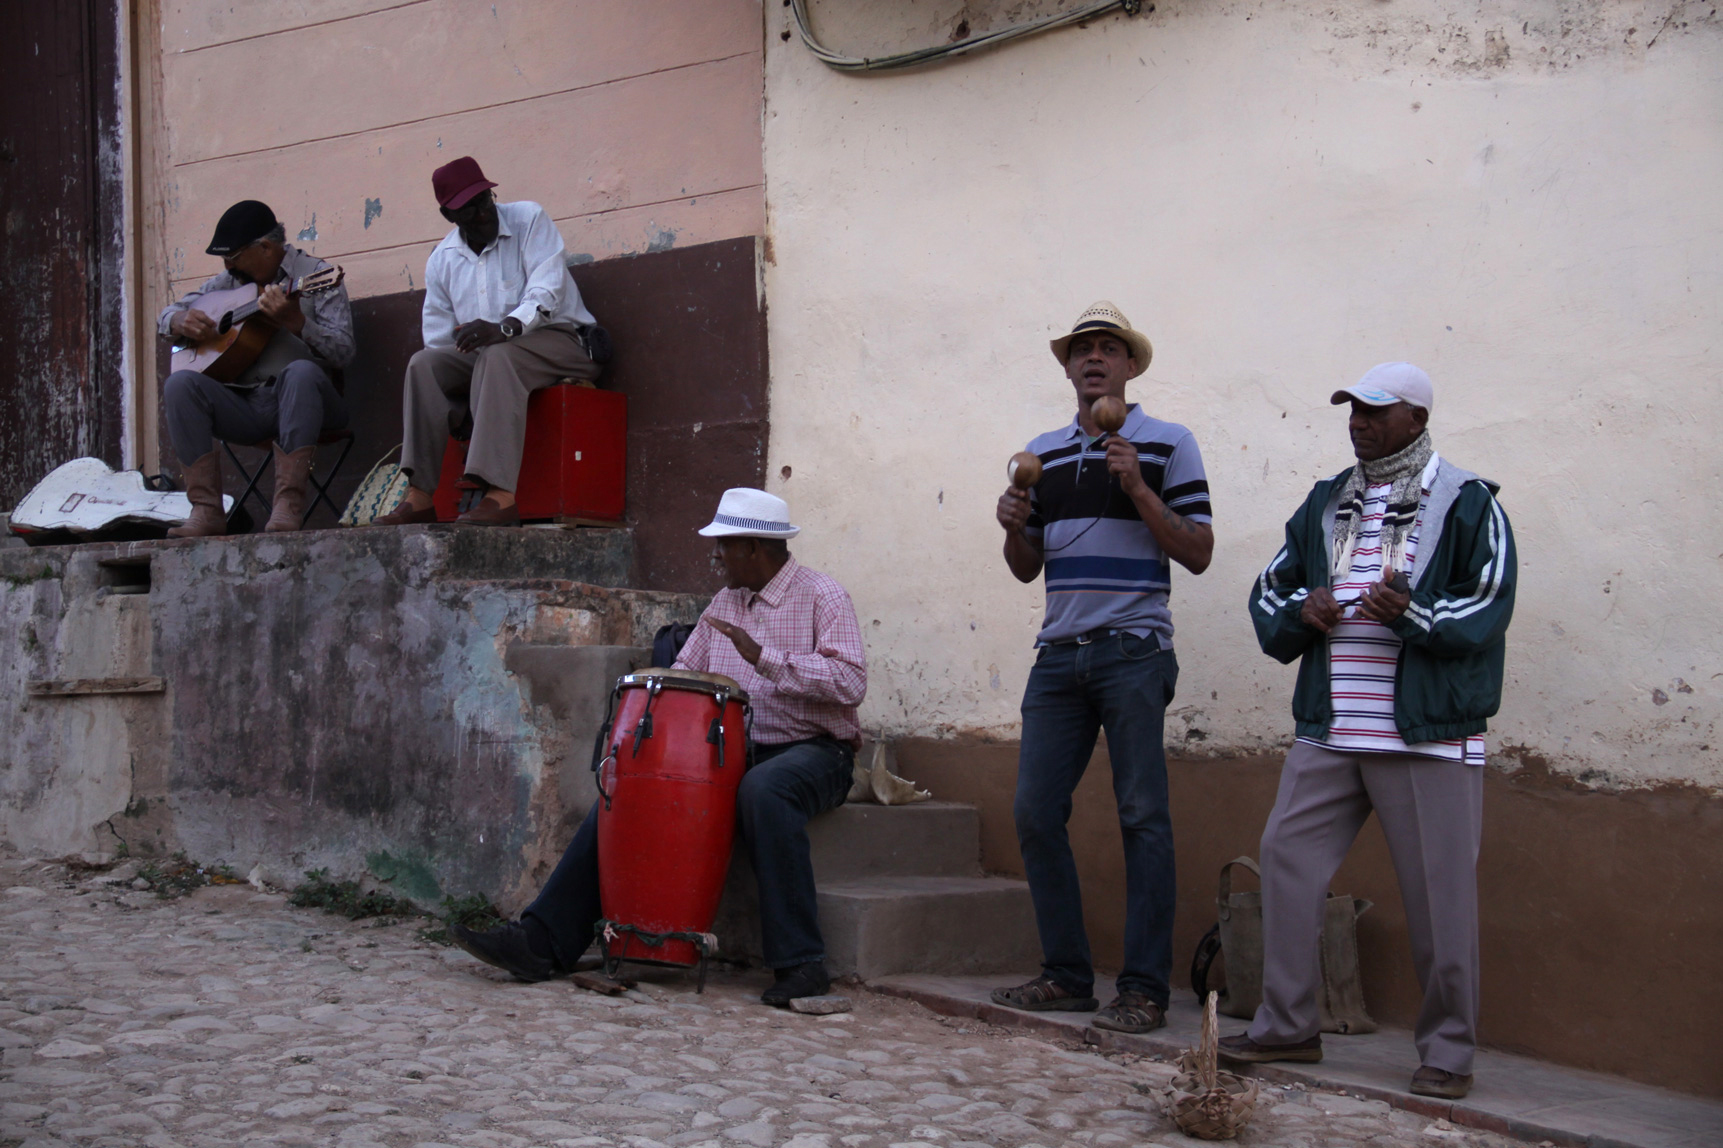 Musicians in Trinidad, Cuba